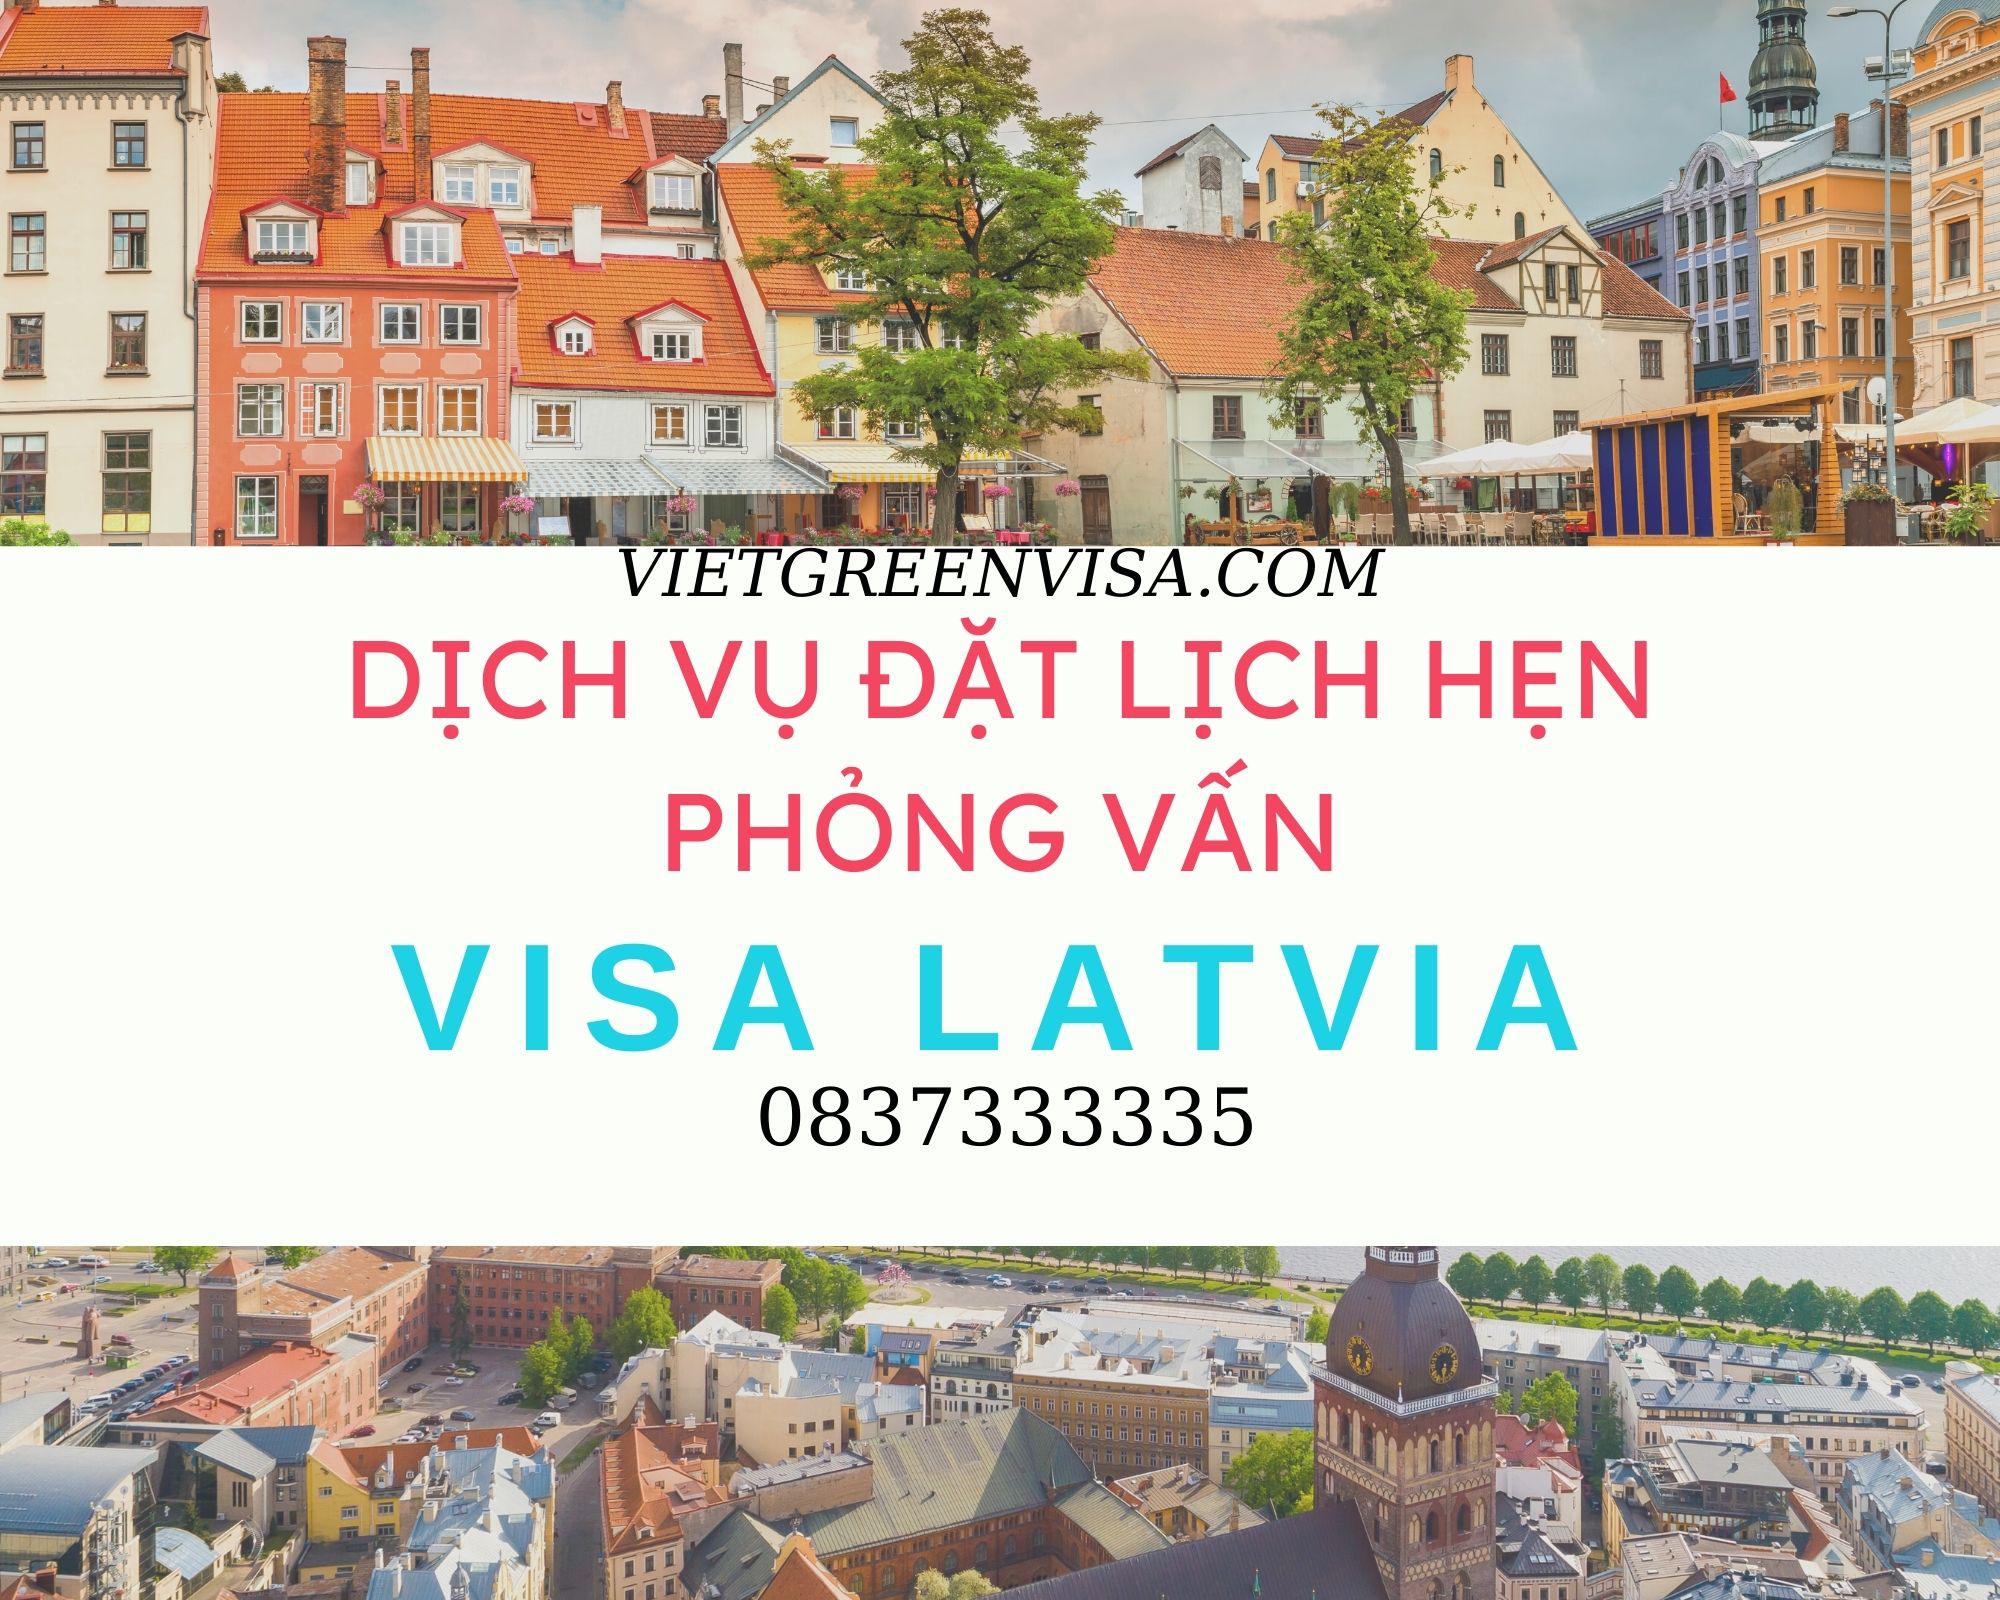 Dịch vụ đặt lịch hẹn phỏng vấn visa Latvia nhanh chóng